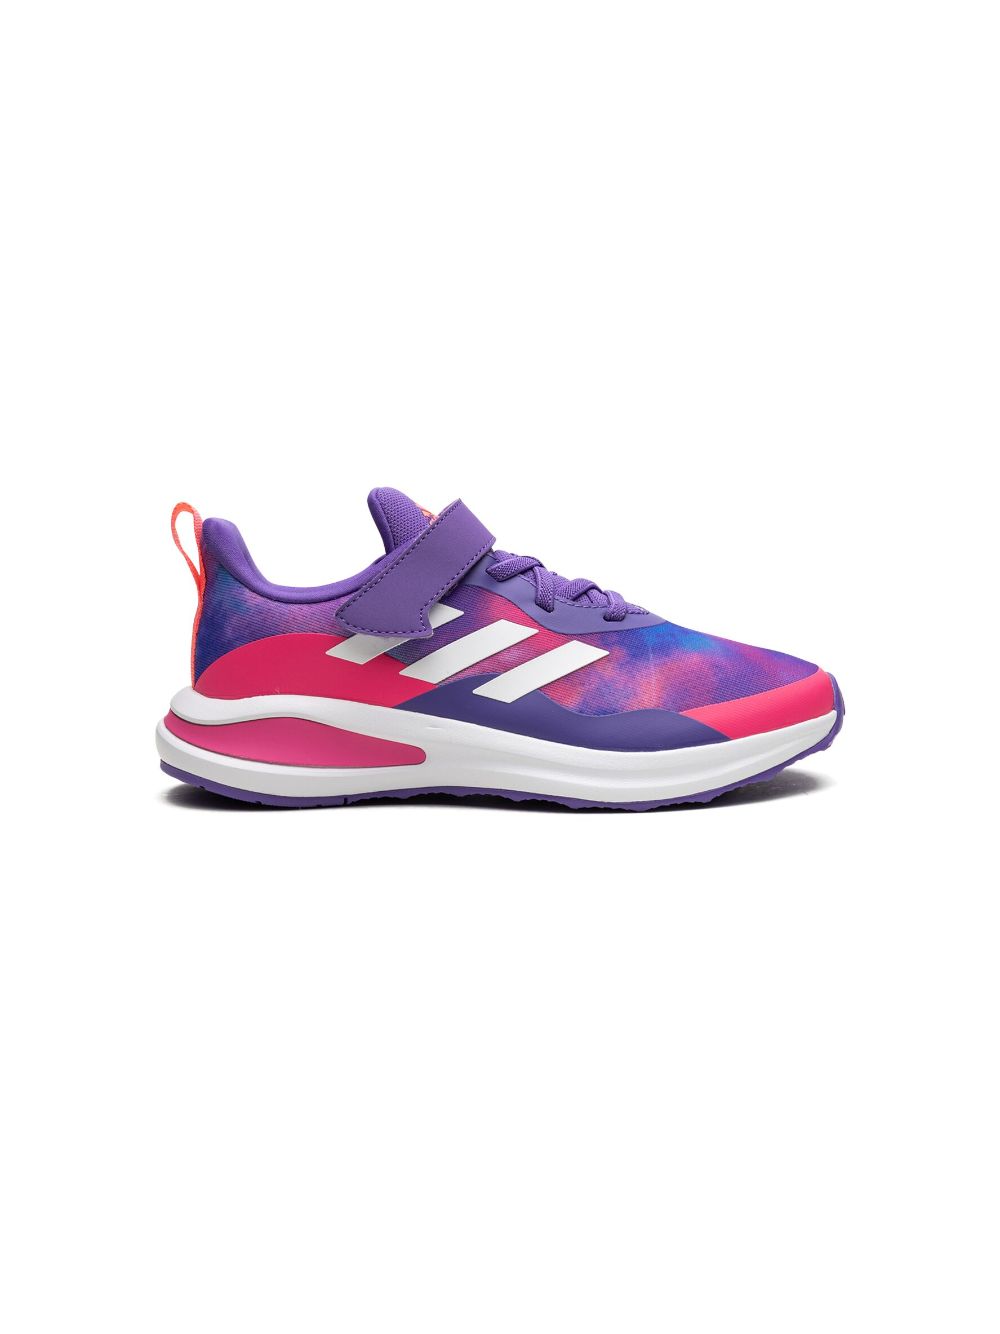 adidas Kids Fortarun El K "Purple Rush" sneakers - Paars